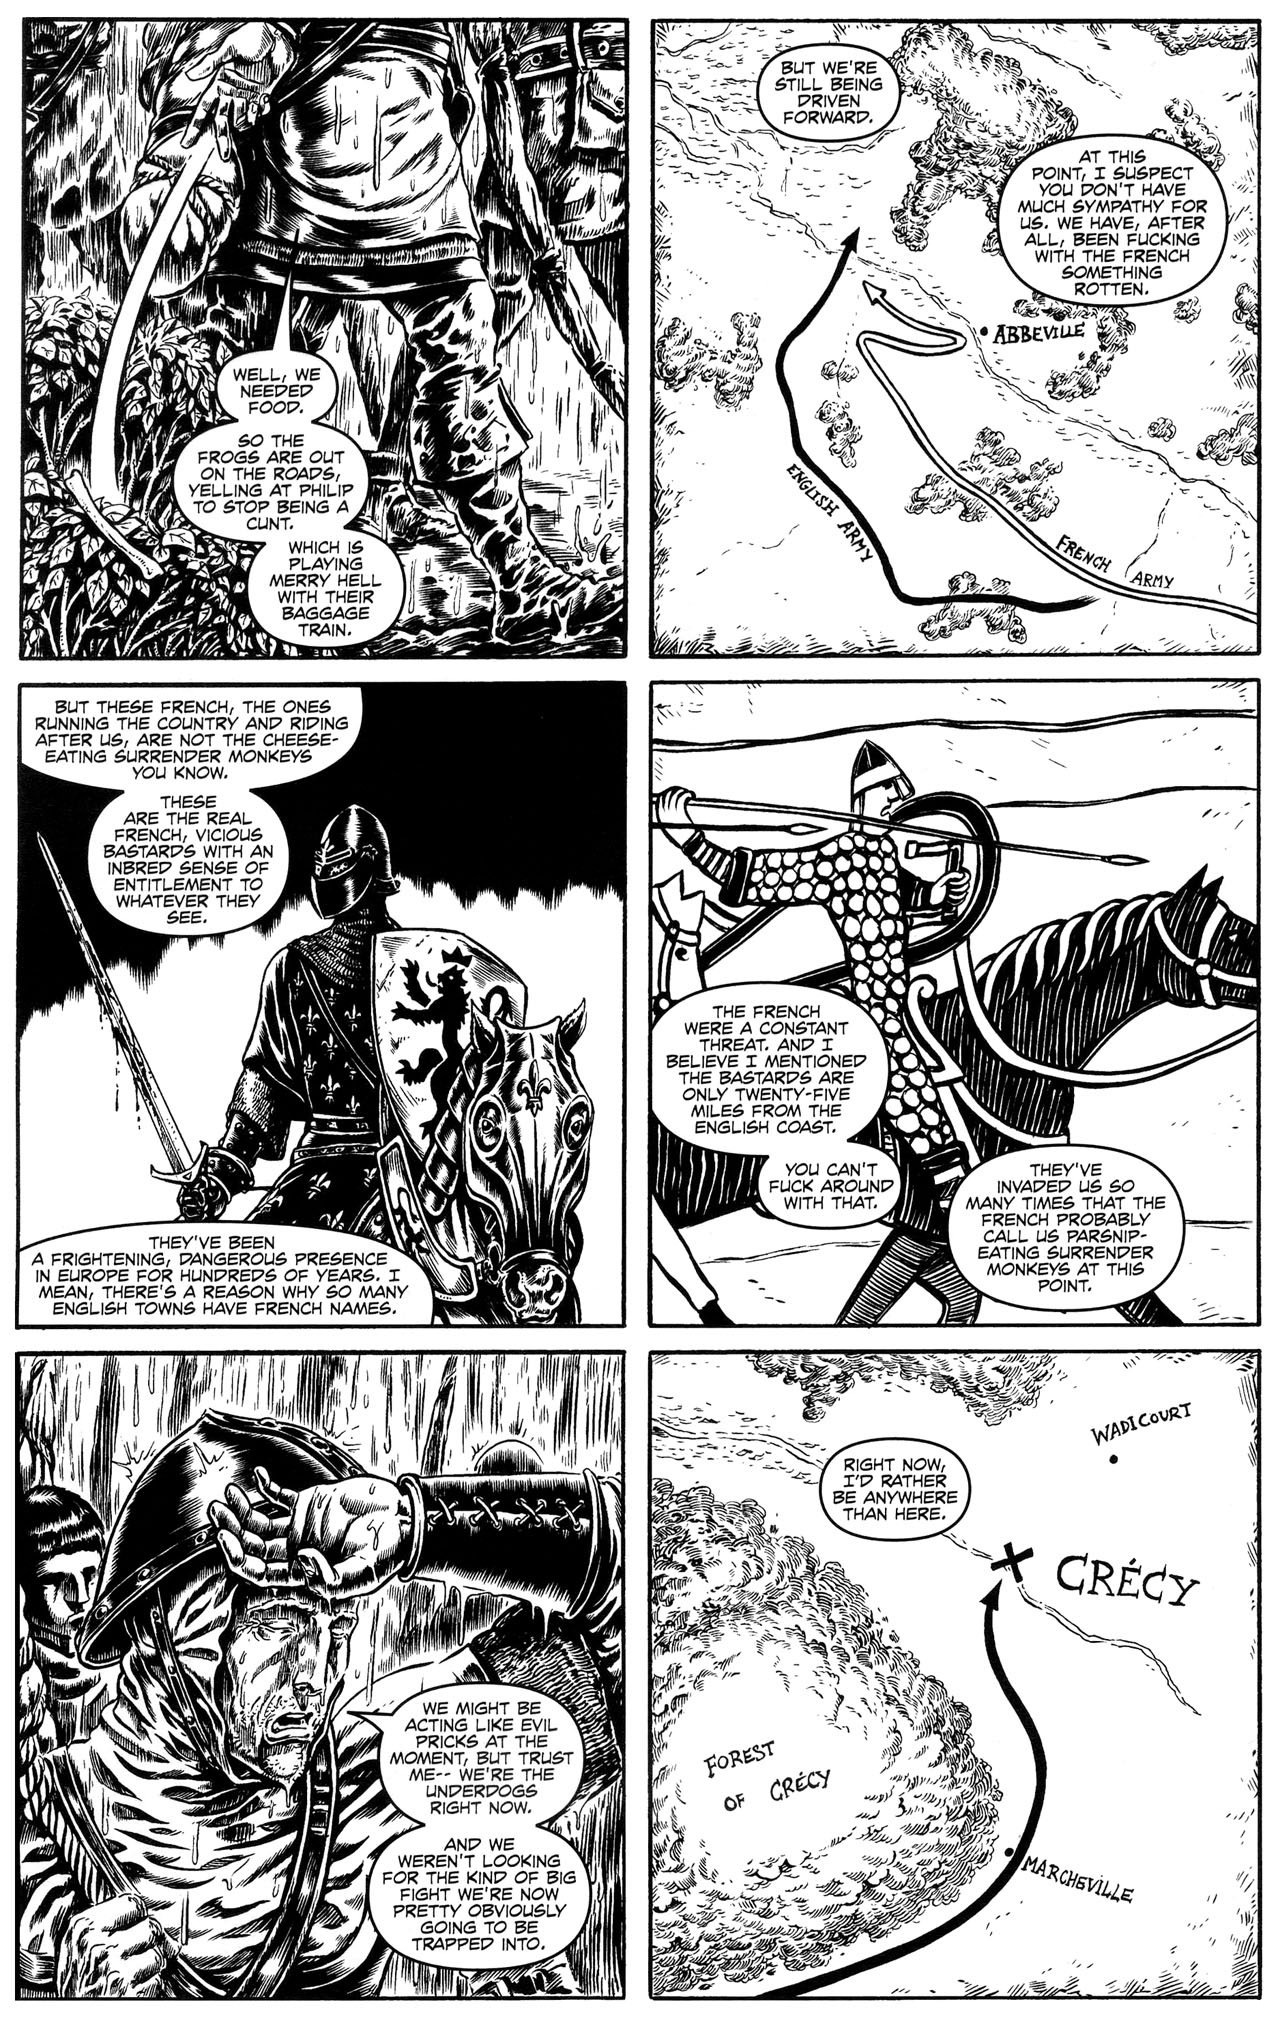 Read online Warren Ellis Crécy comic -  Issue # Full - 20